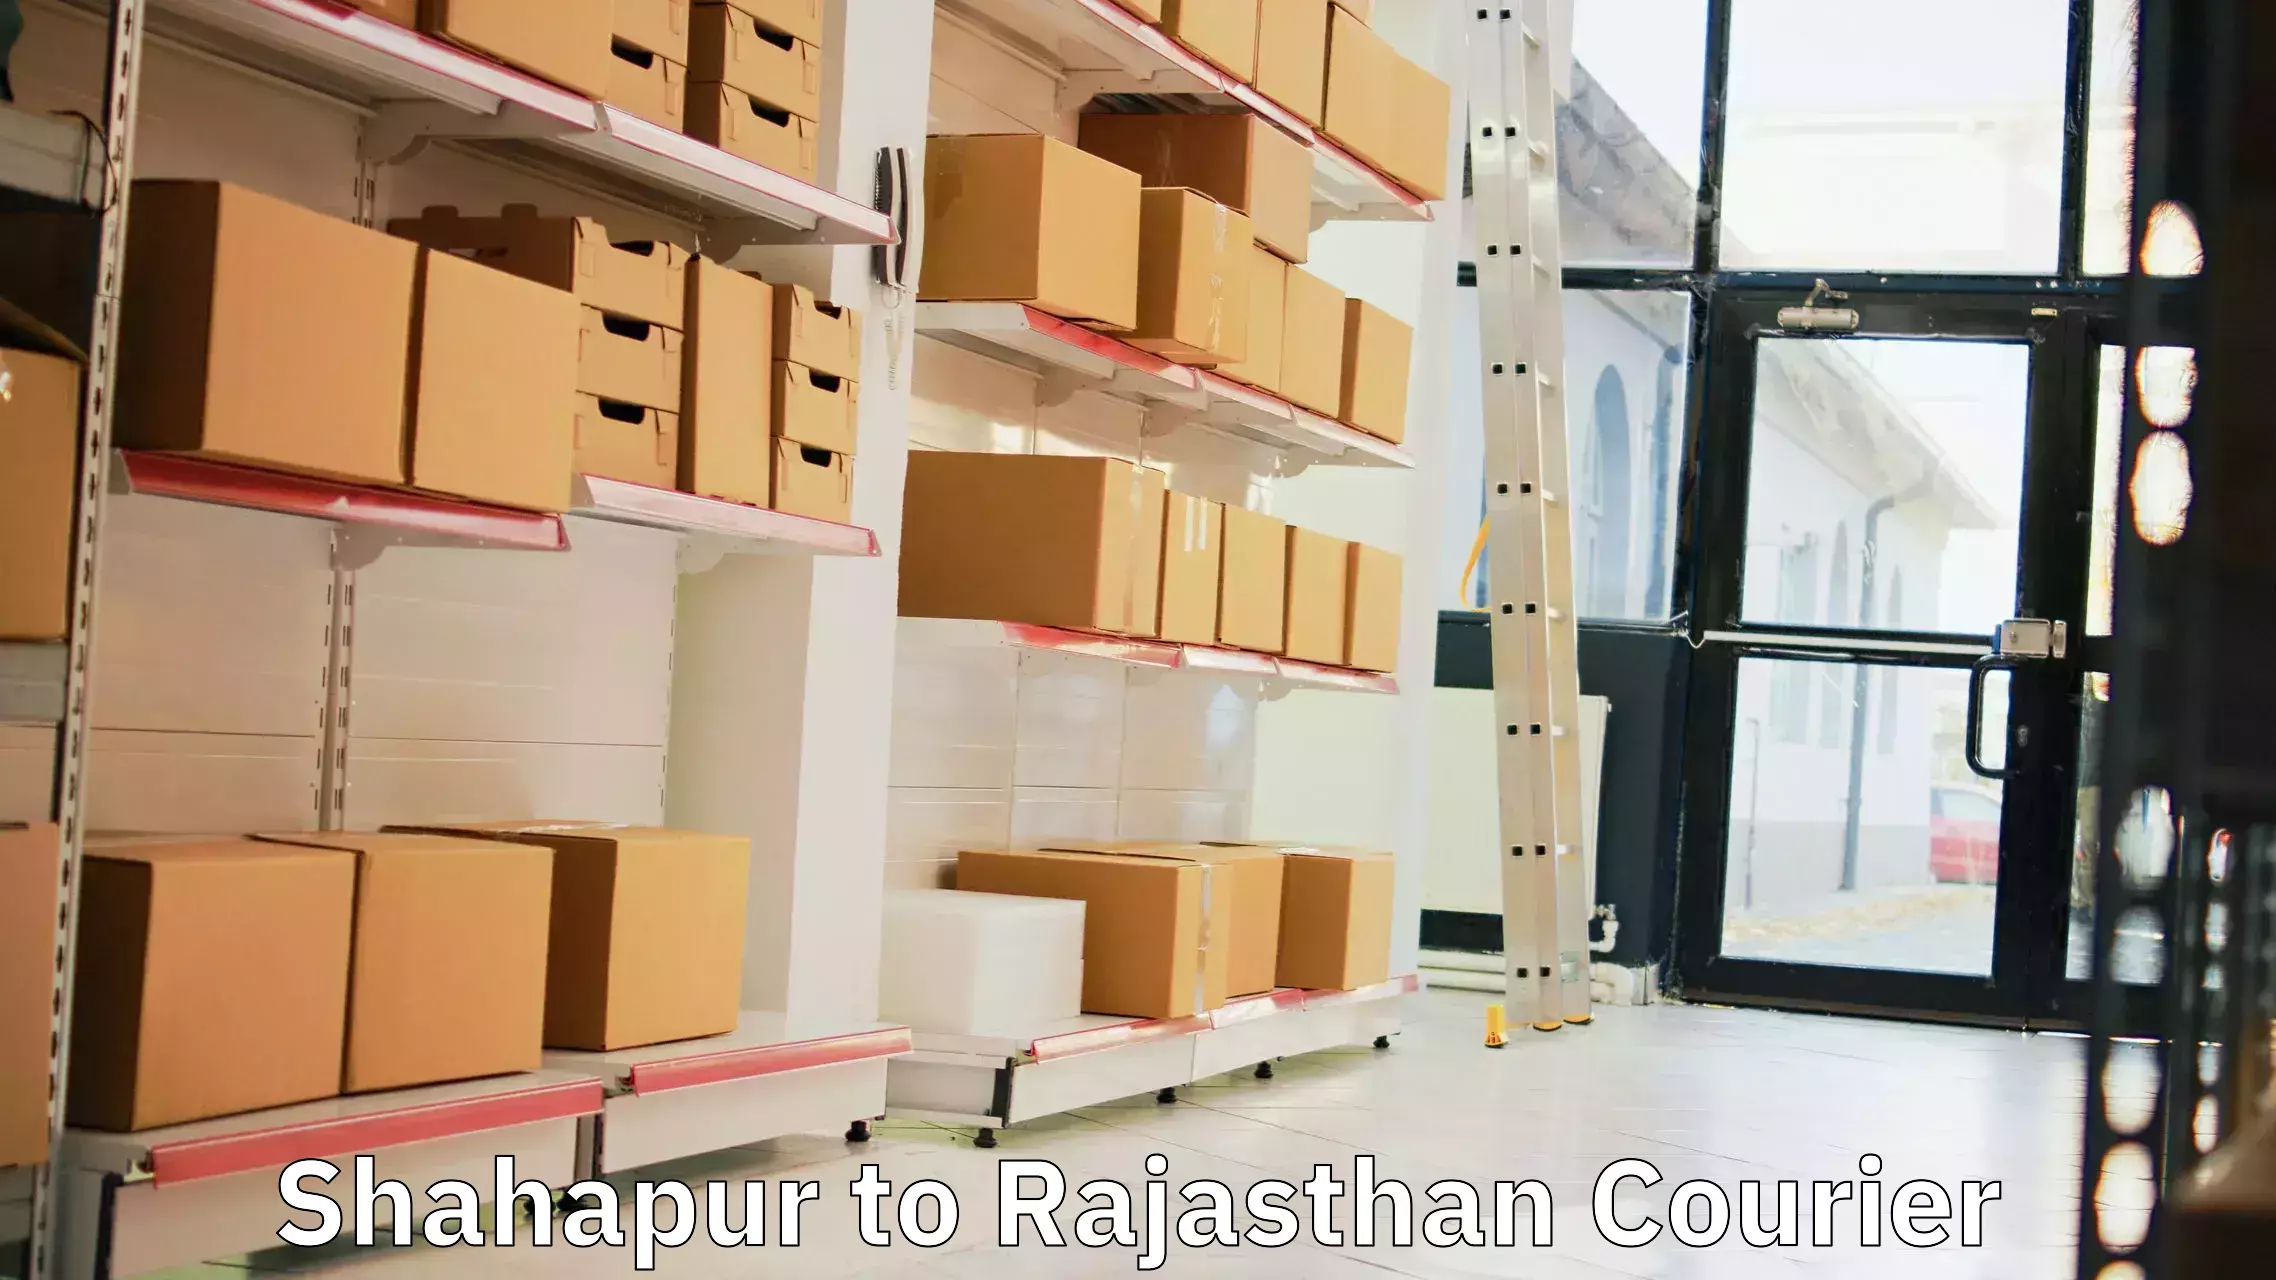 Efficient parcel transport Shahapur to Chittorgarh